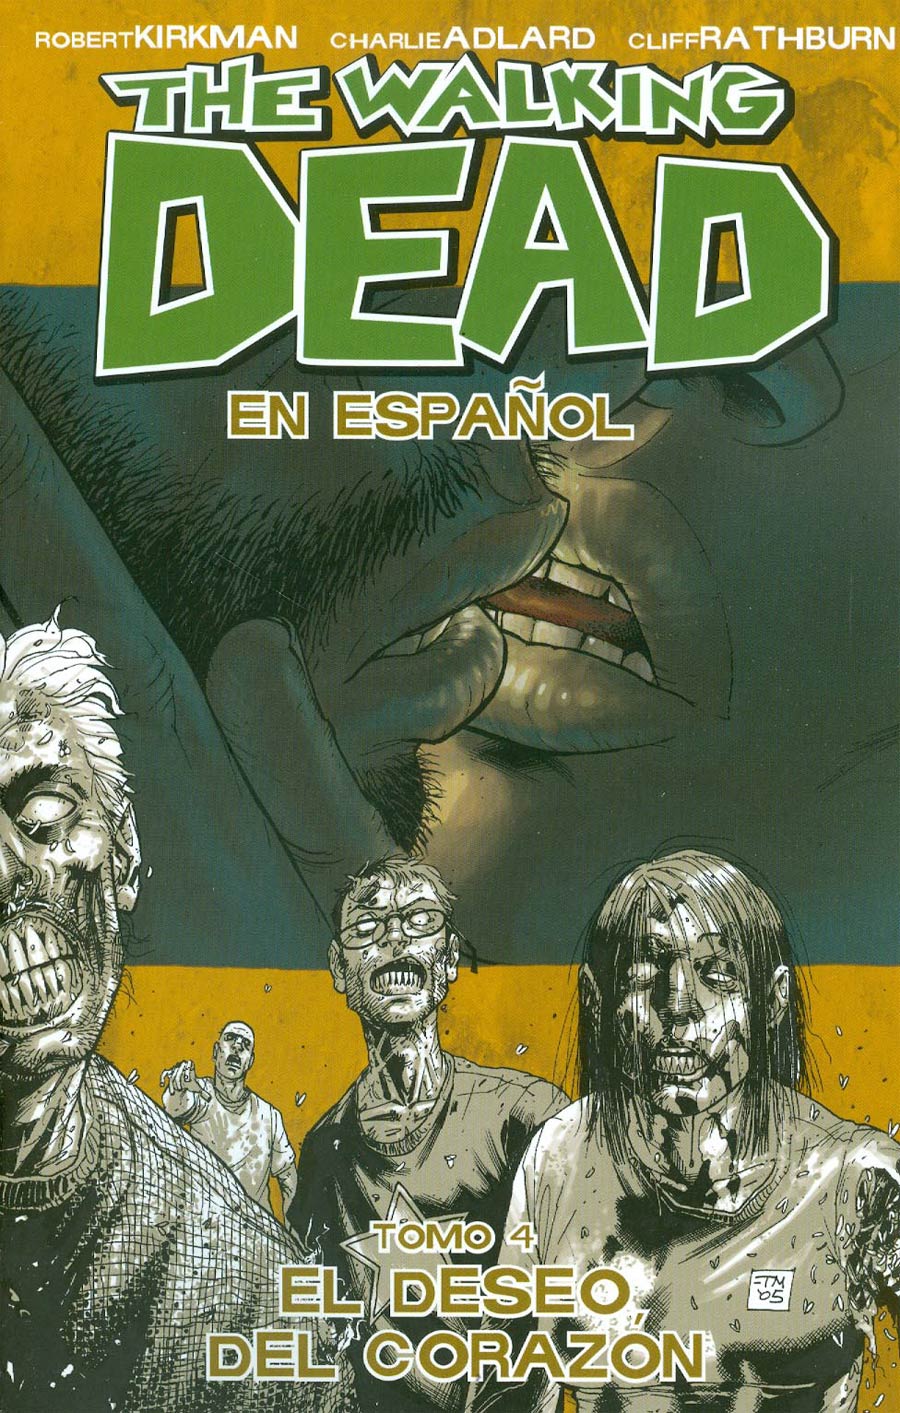 Walking Dead En Espanol Vol 4 El Deseo Del Corazon TP